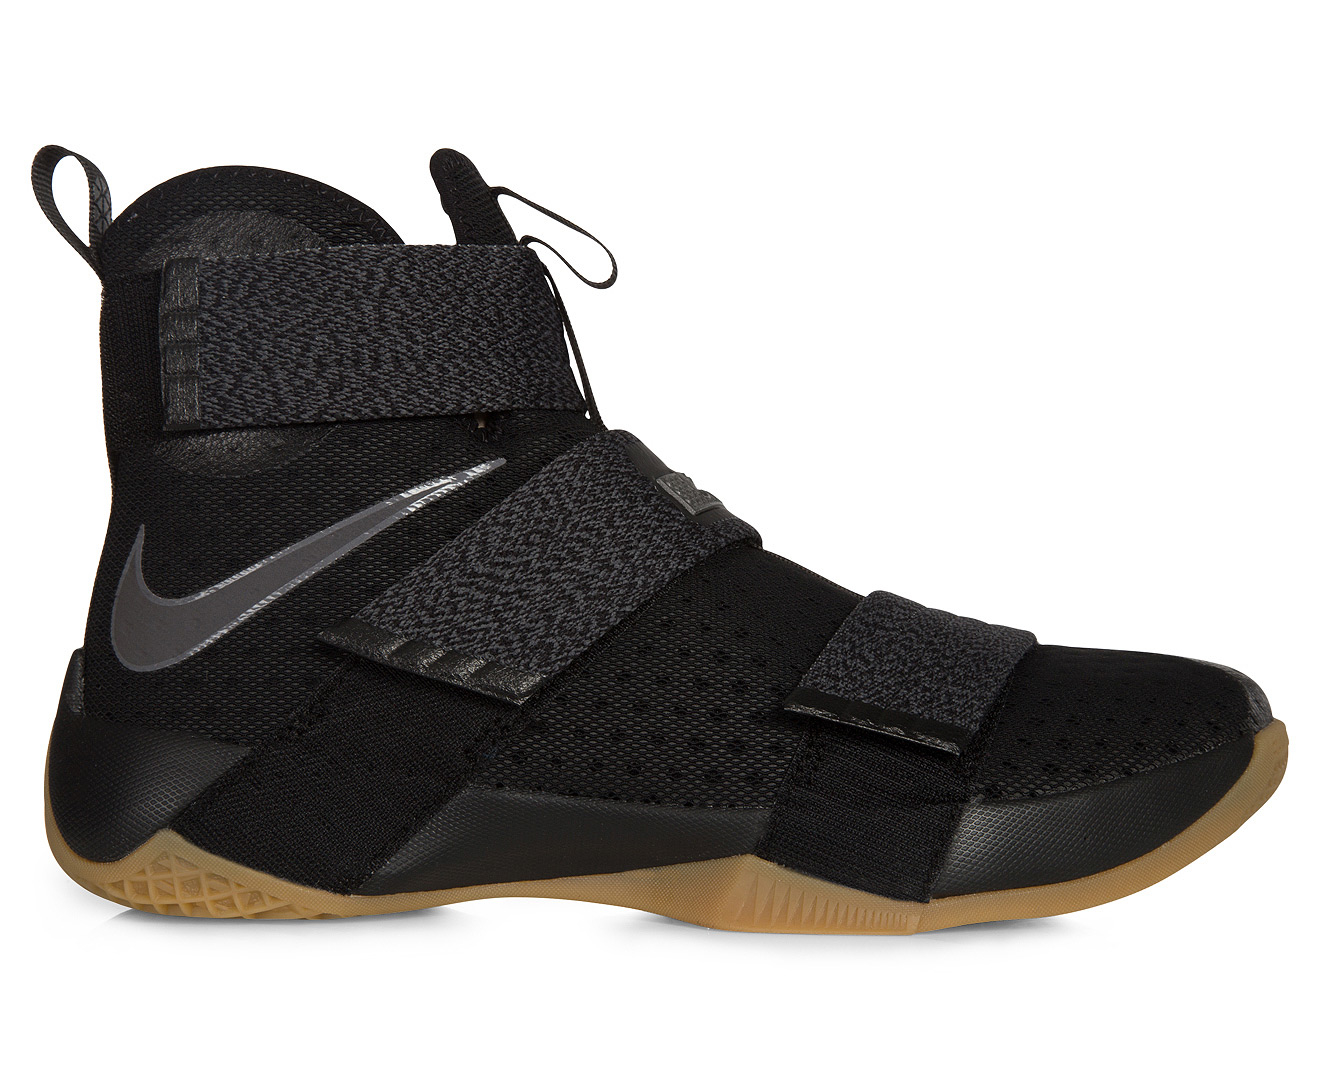 Nike Men's LeBron Soldier 10 SFG Basketball Shoe - Black/Metallic Dark Grey